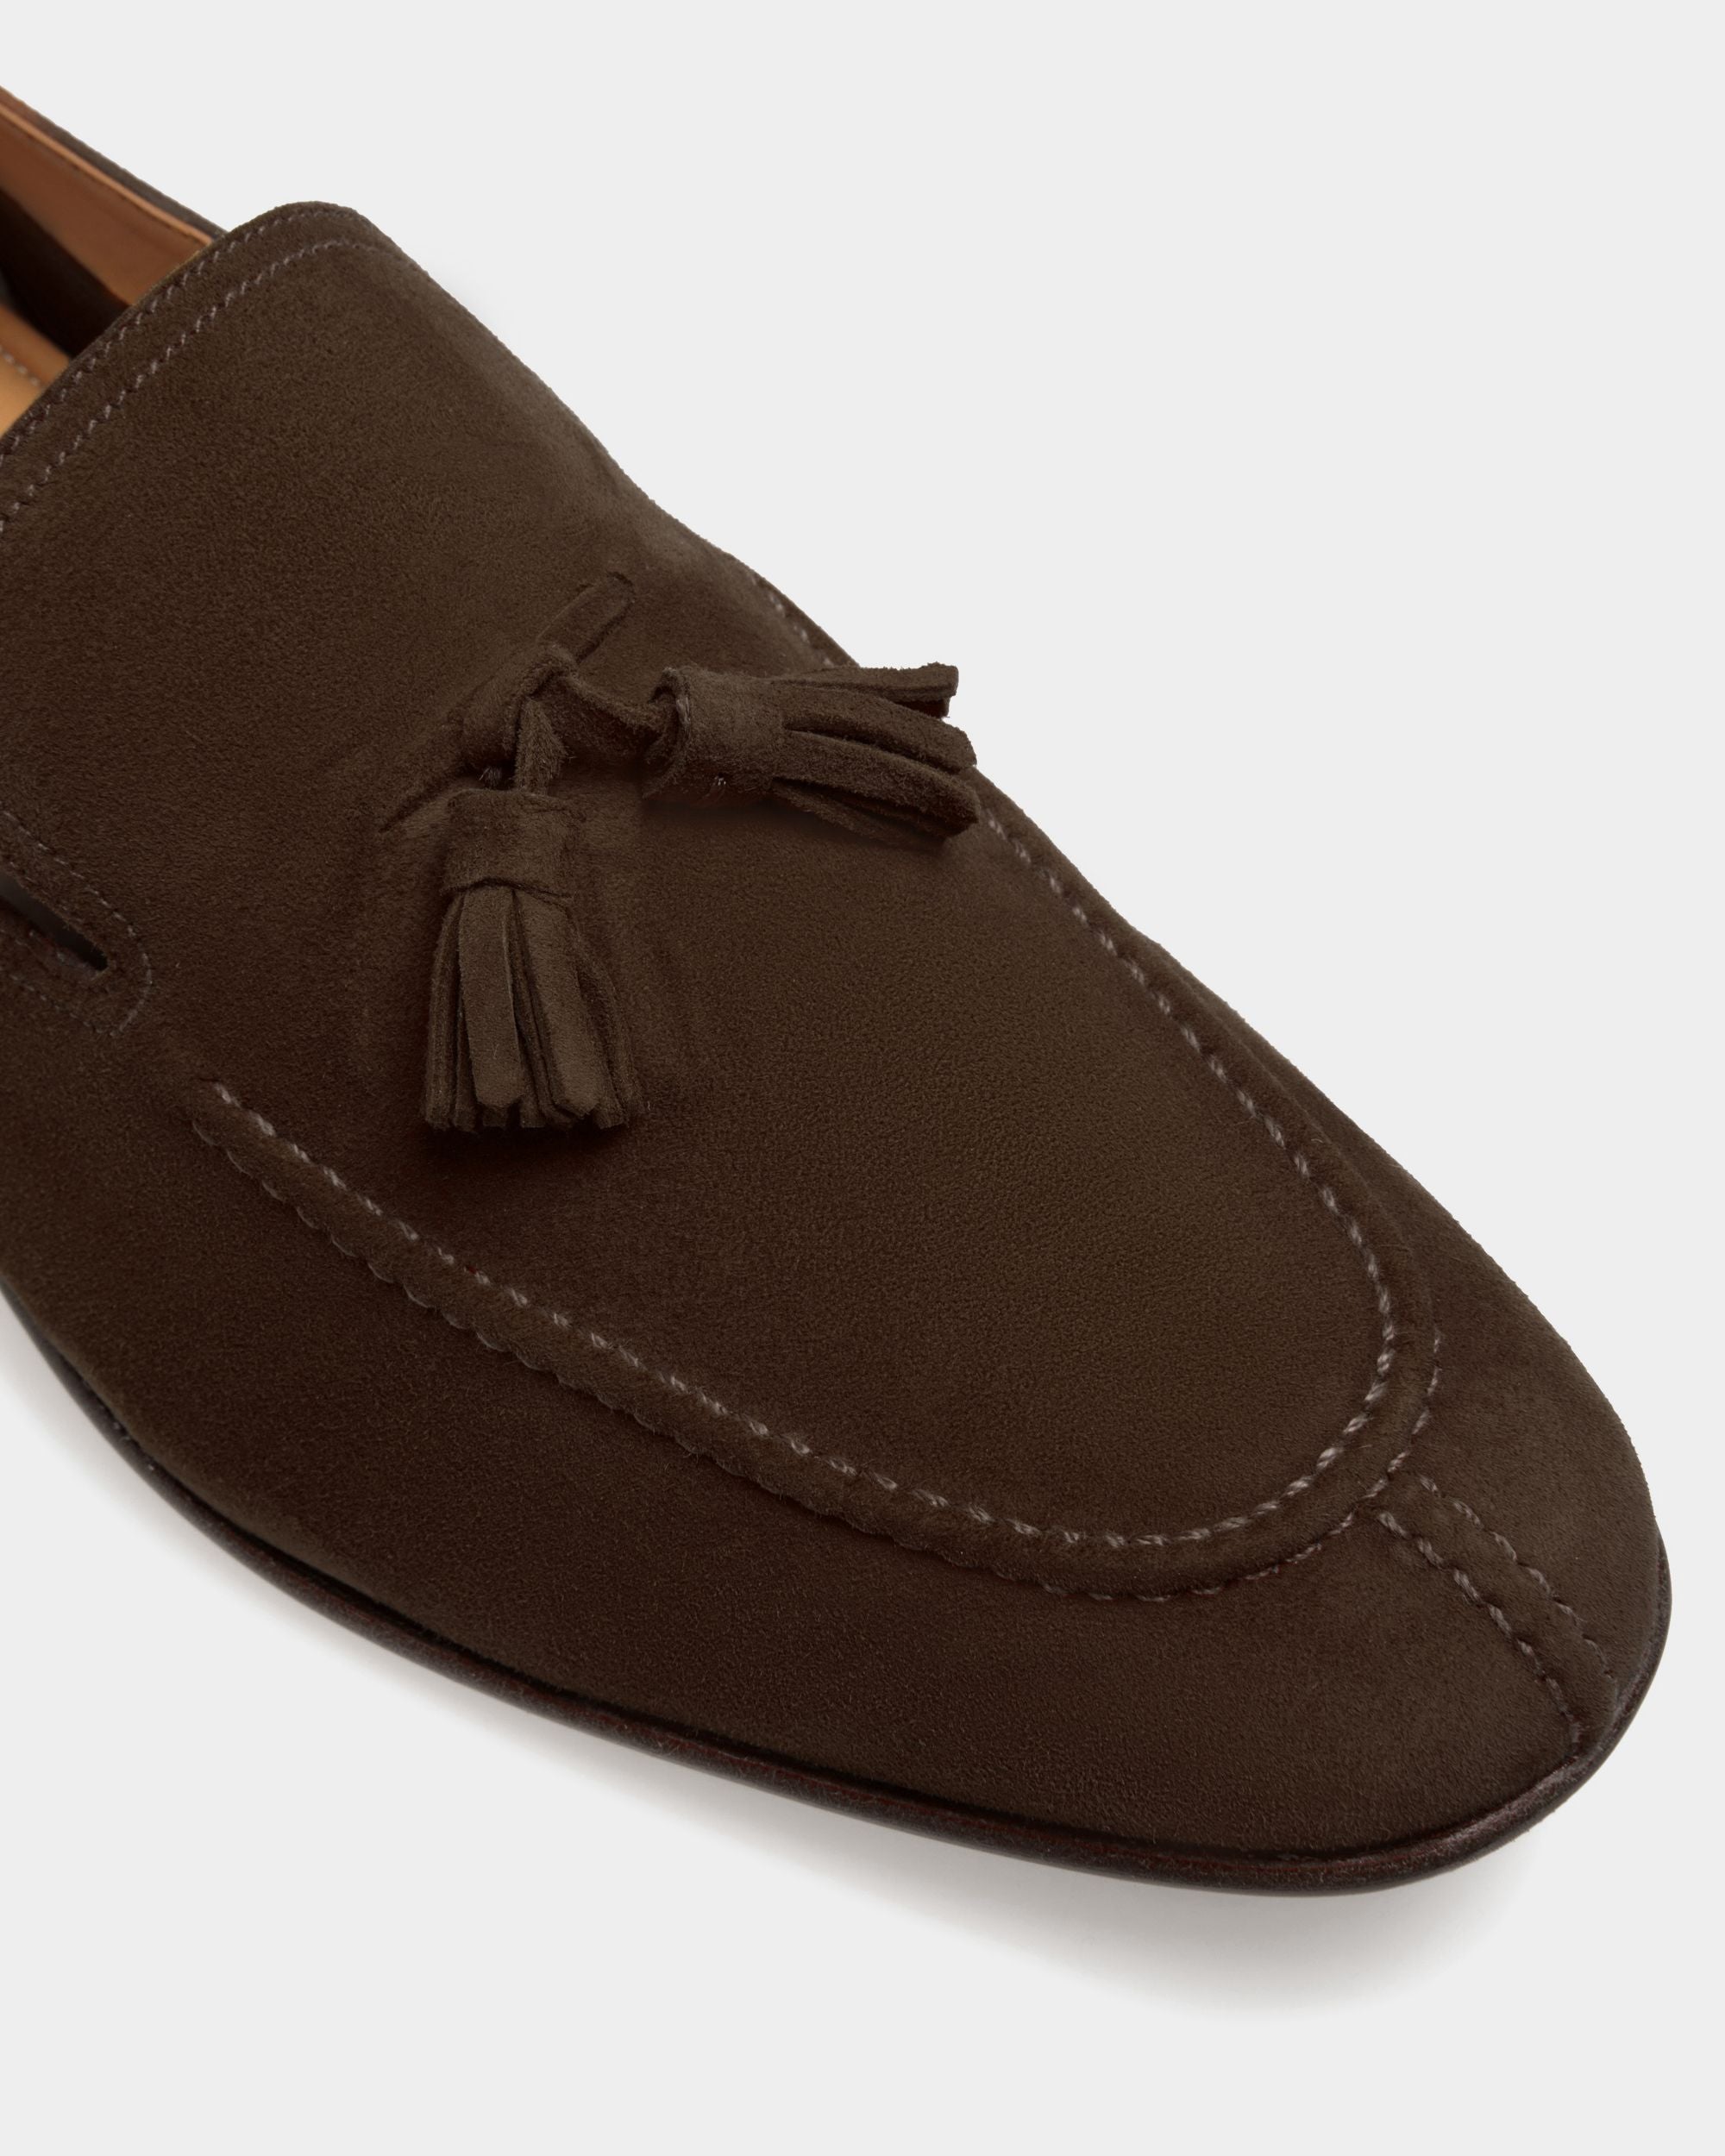 Suisse | Loafer für Herren aus Veloursleder in Braun | Bally | Still Life Detail